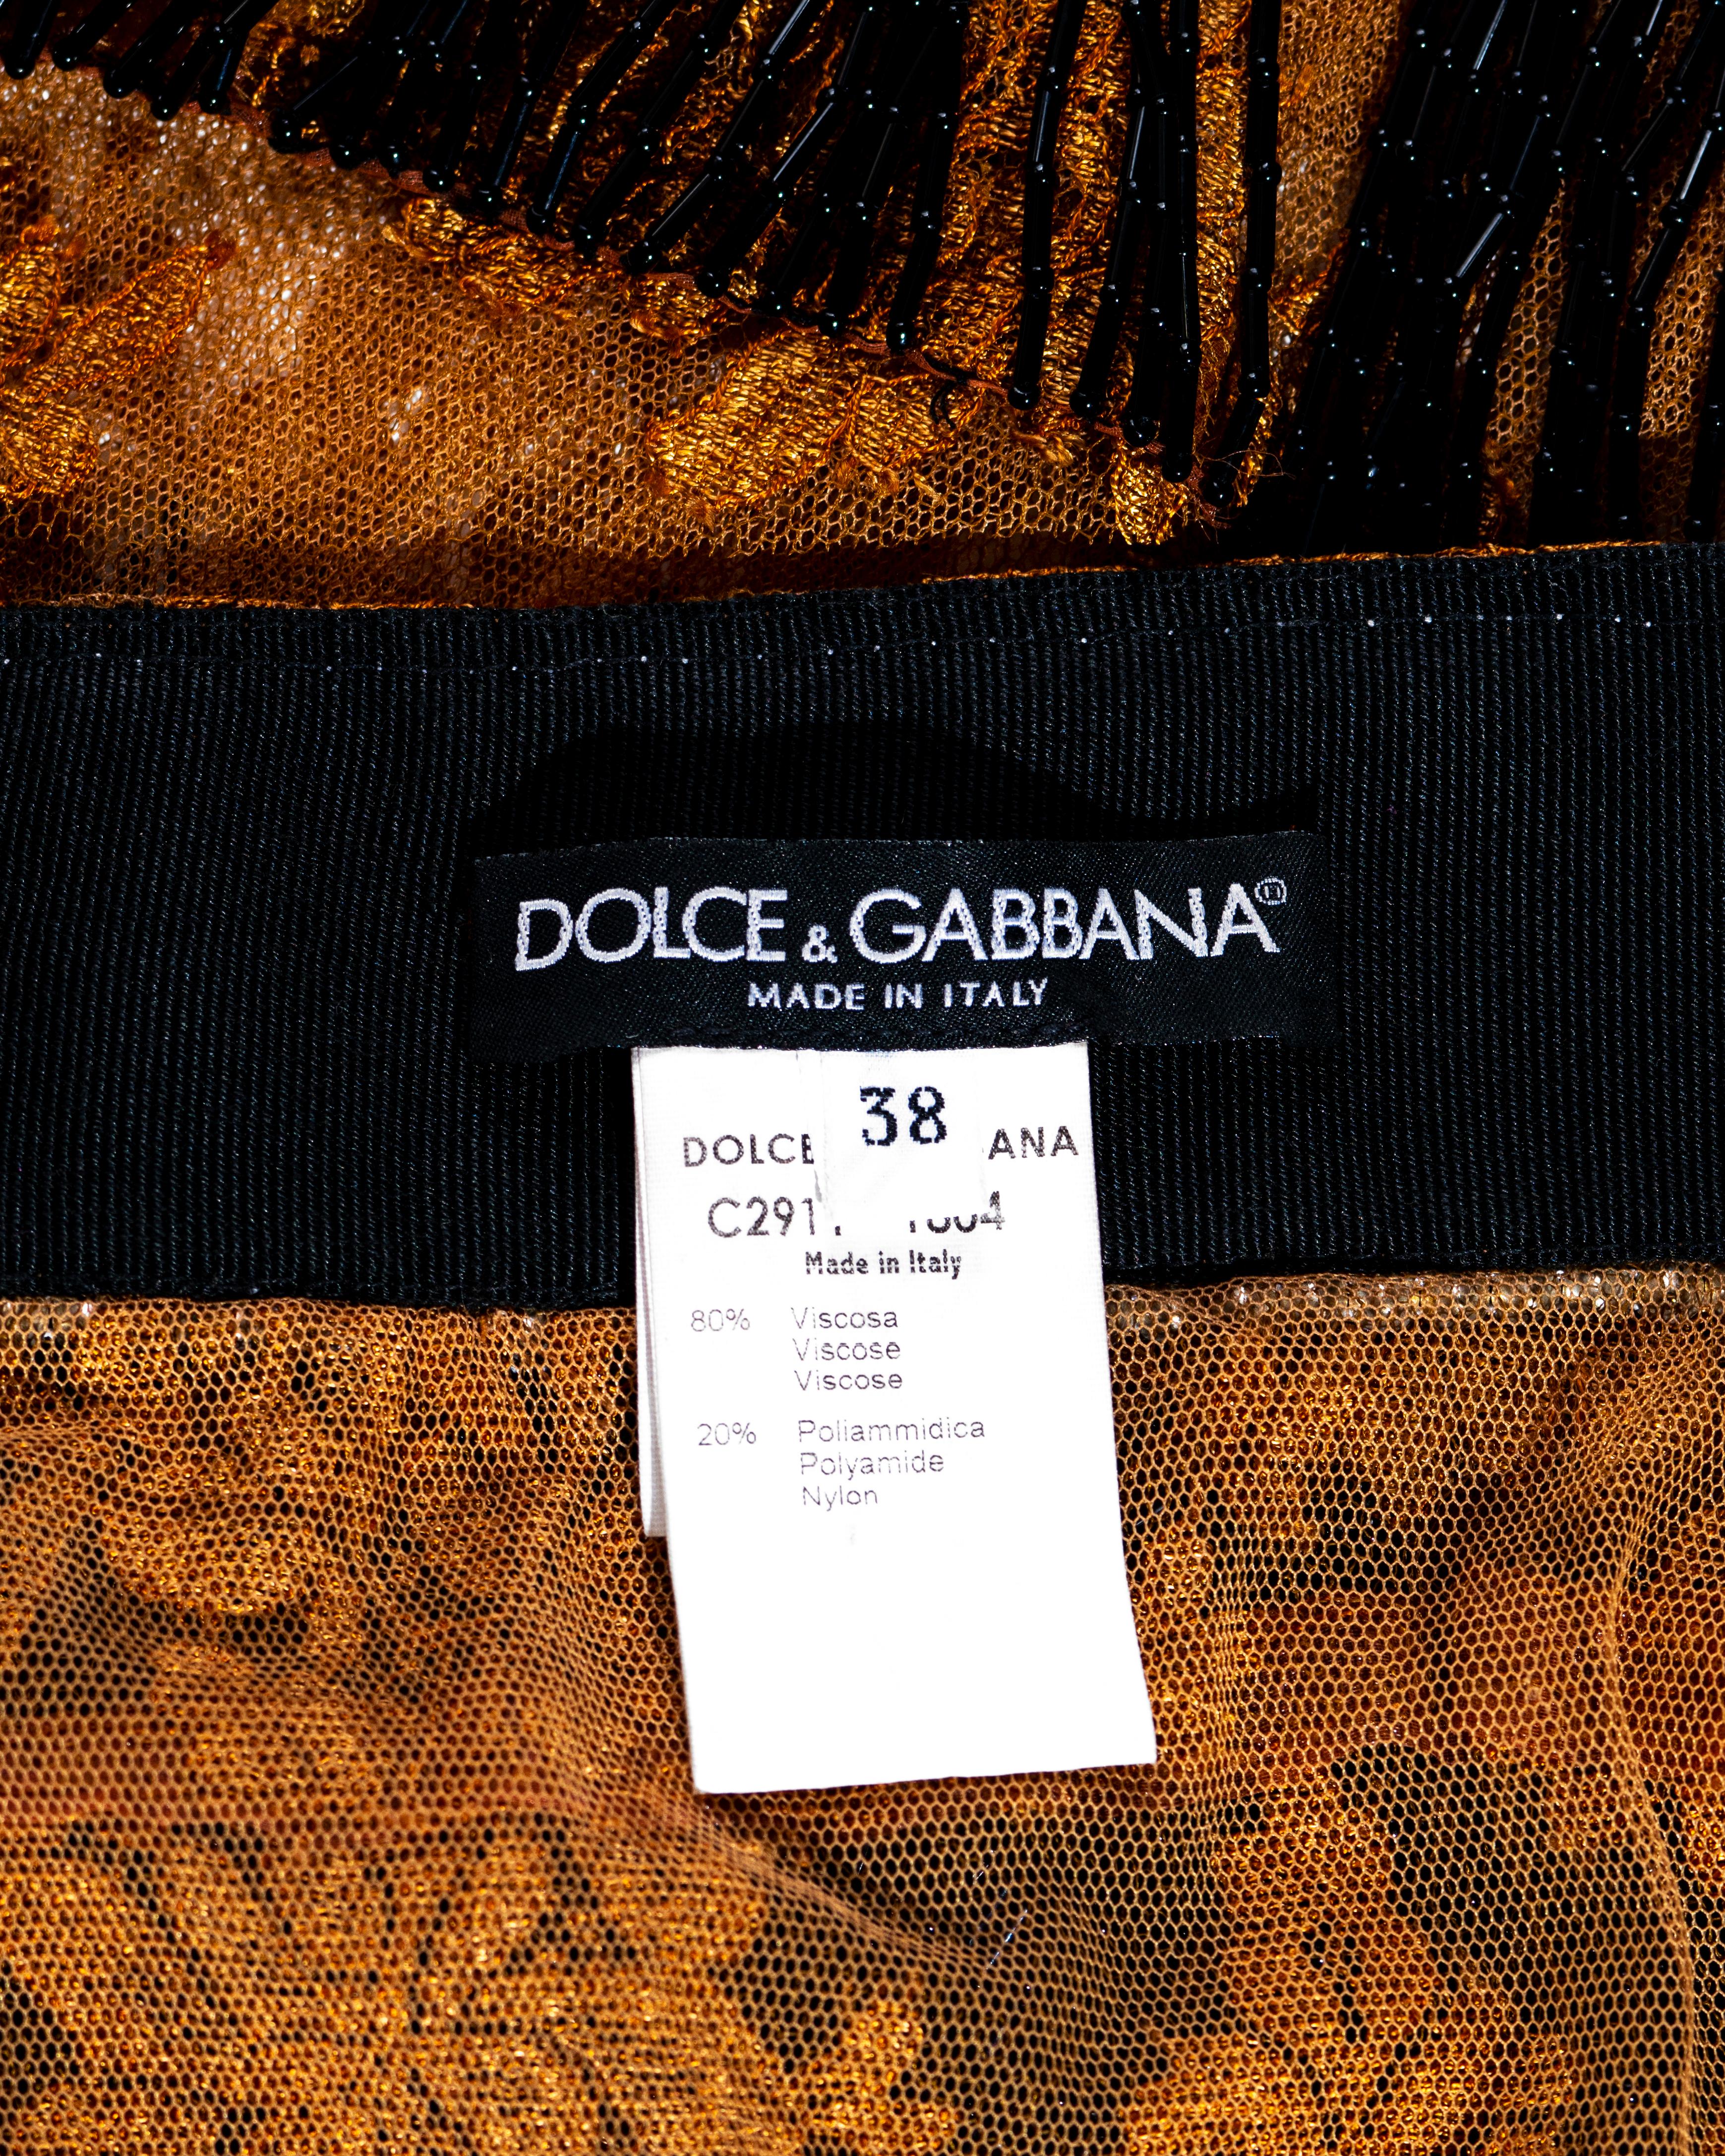 Jupe en dentelle de cuivre et cristaux perlés Dolce & Gabbana, ss 2000 4